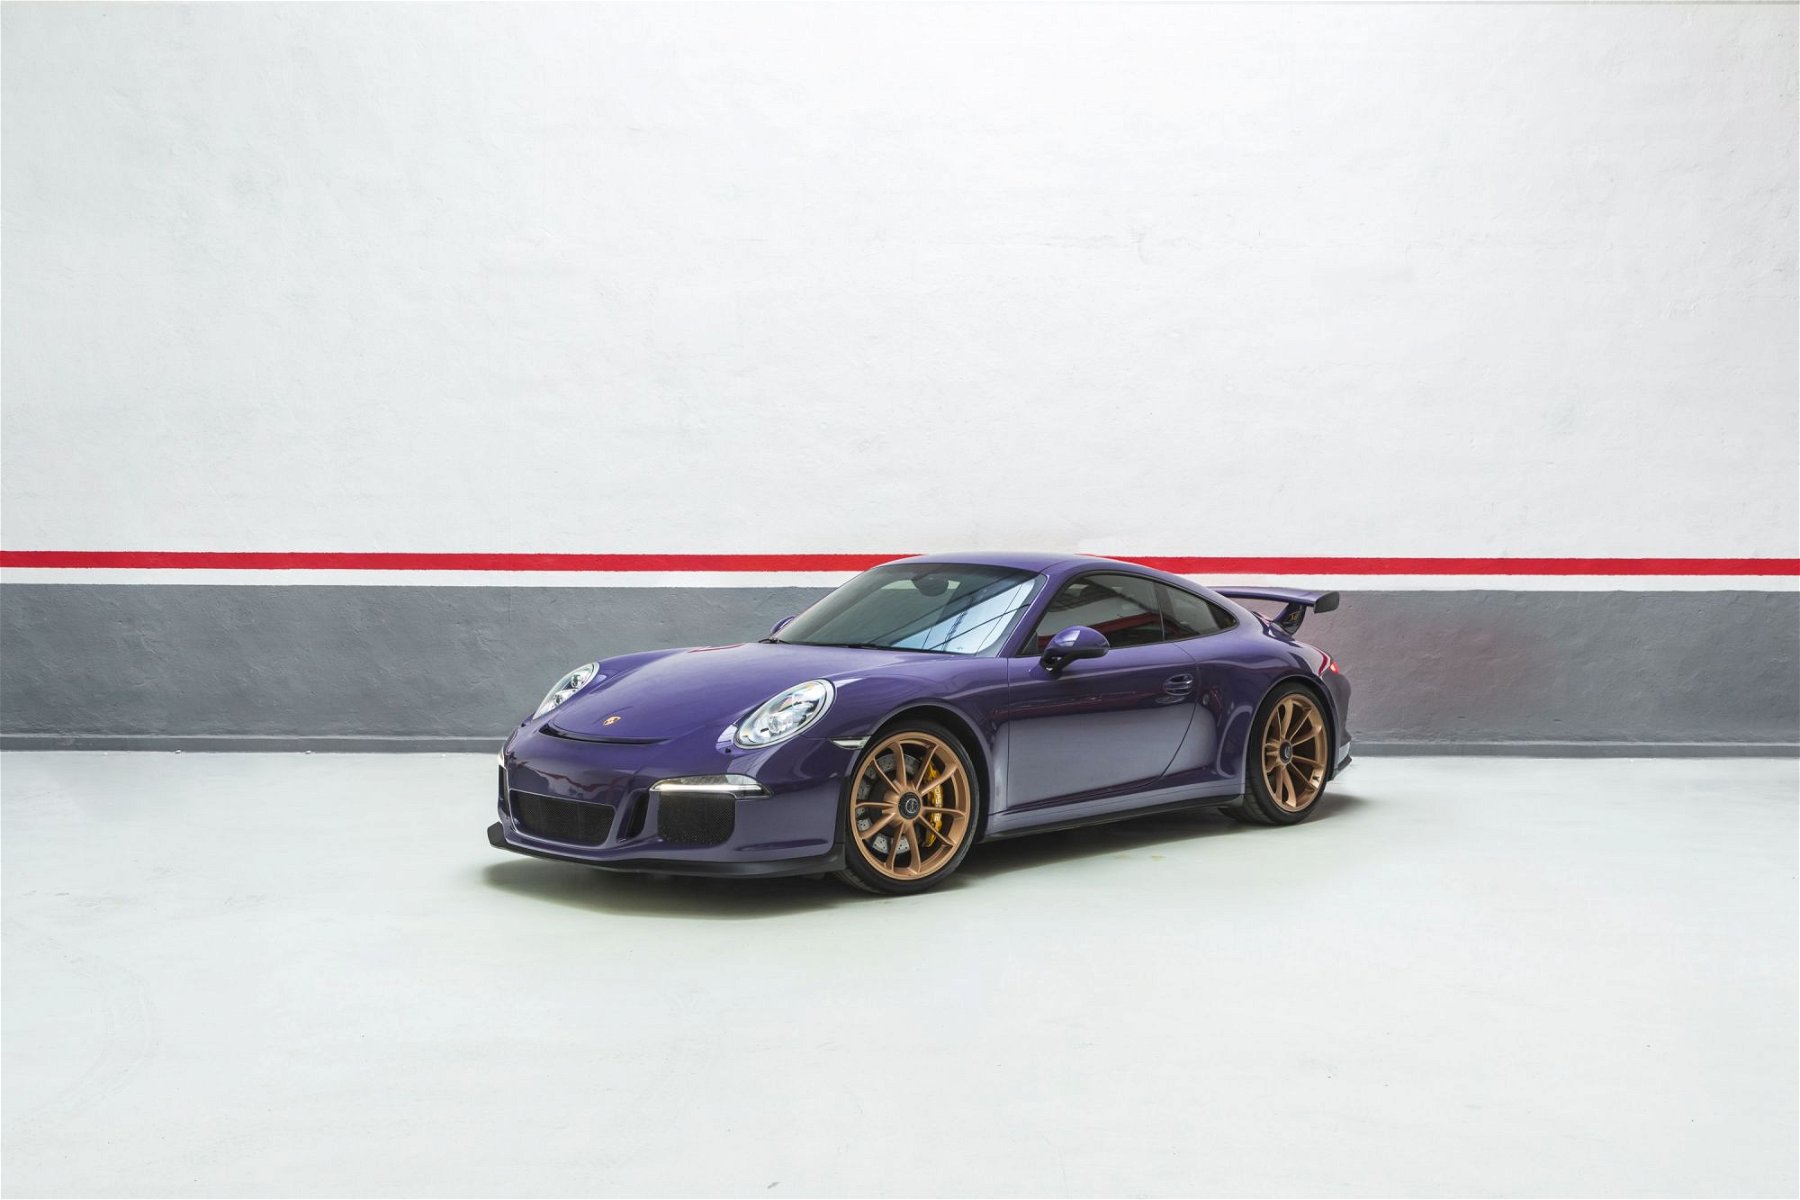 2014 Porsche 911 kaufen gebraucht - Baujahr 2014